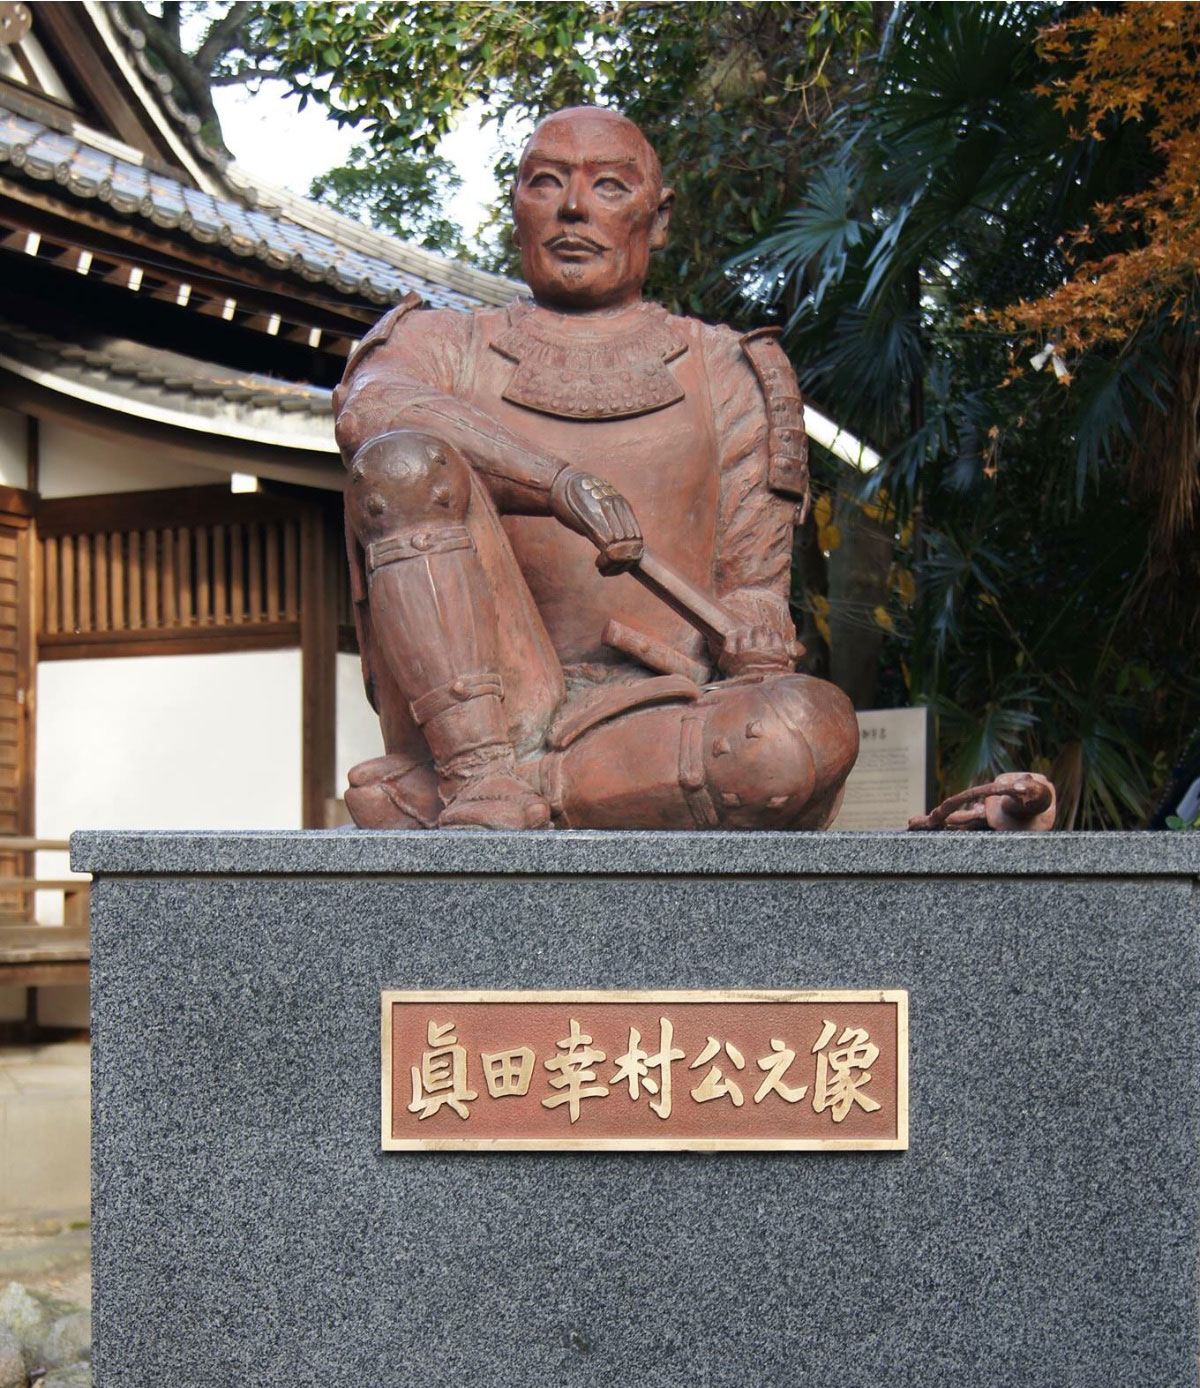 安居神社の幸村公の像。一本松・さなだ松の下で休息している姿